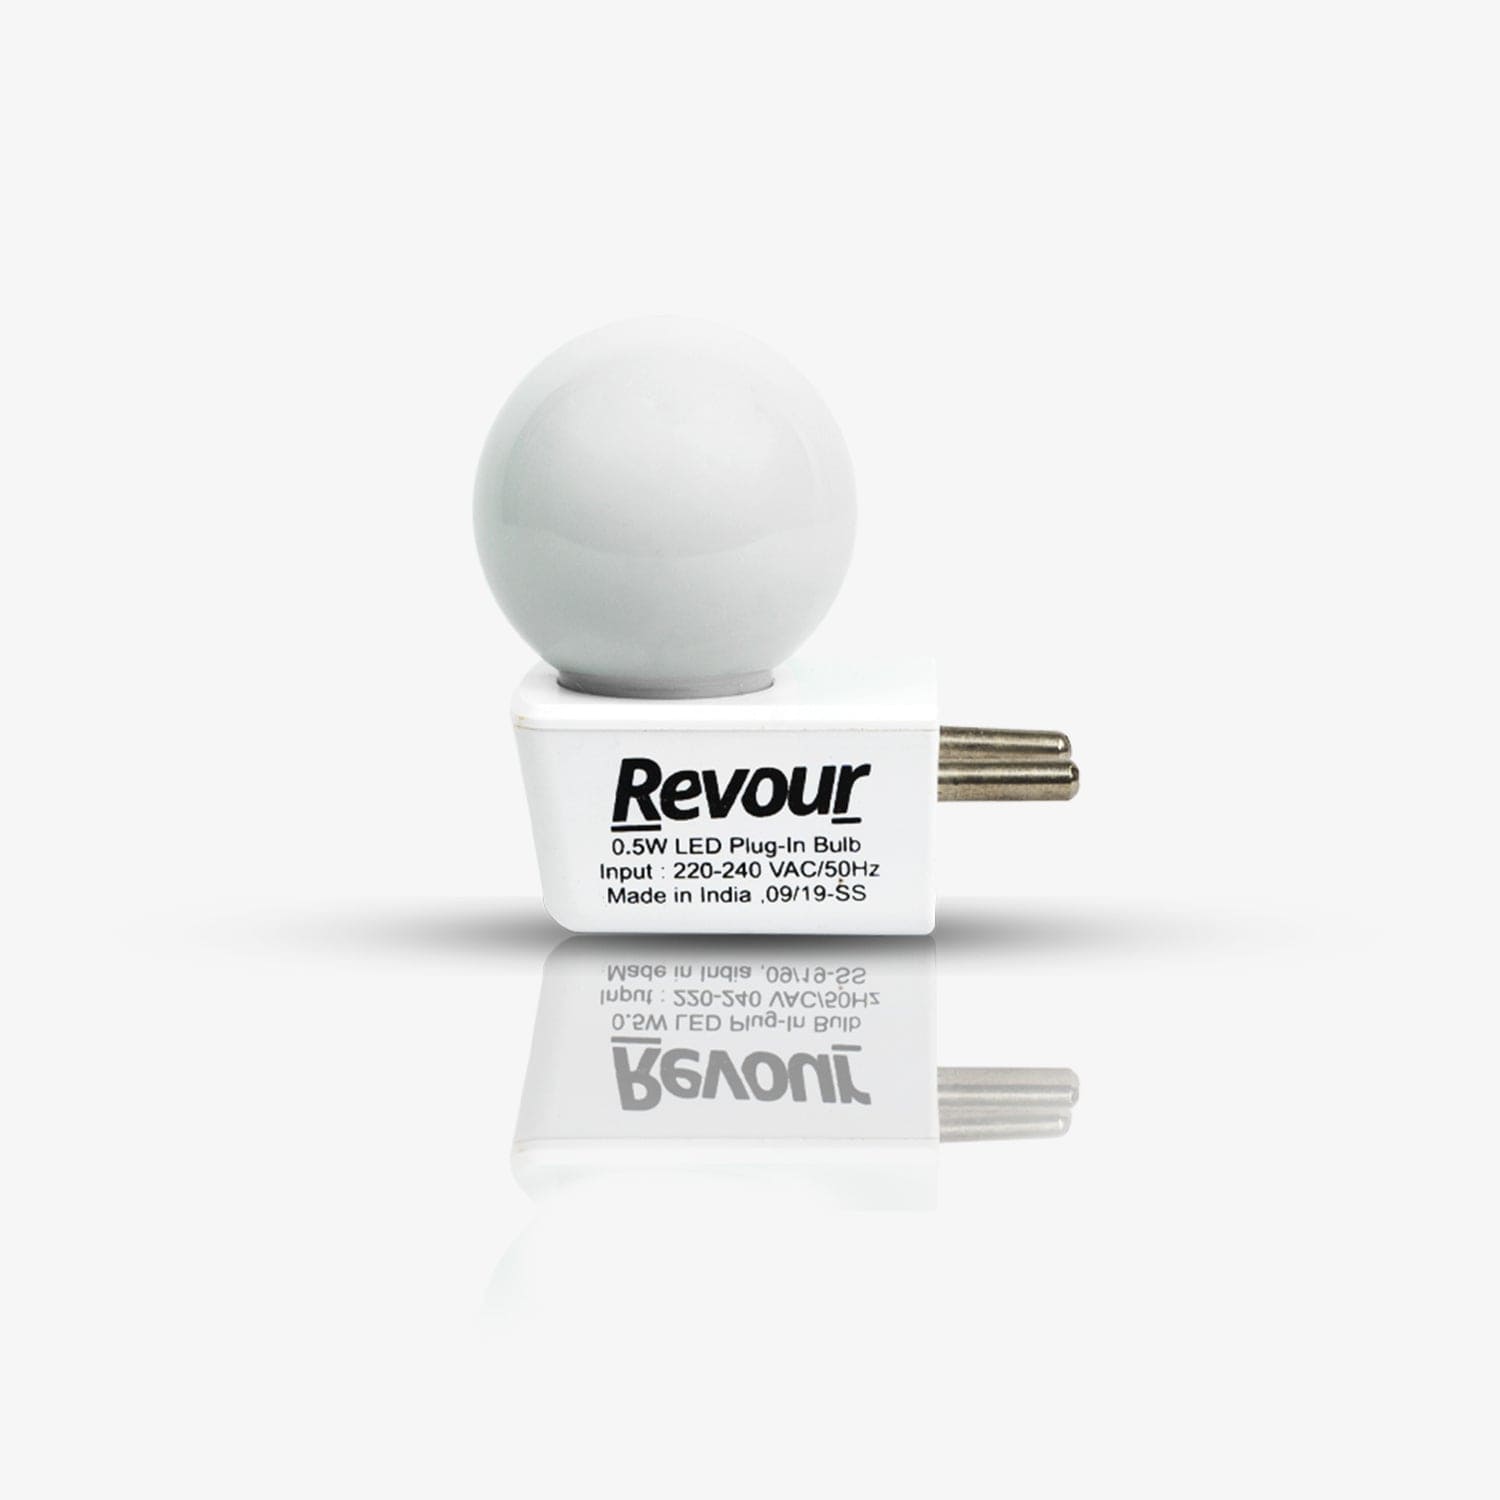 LED Plug-in Bulb – revourconsumer